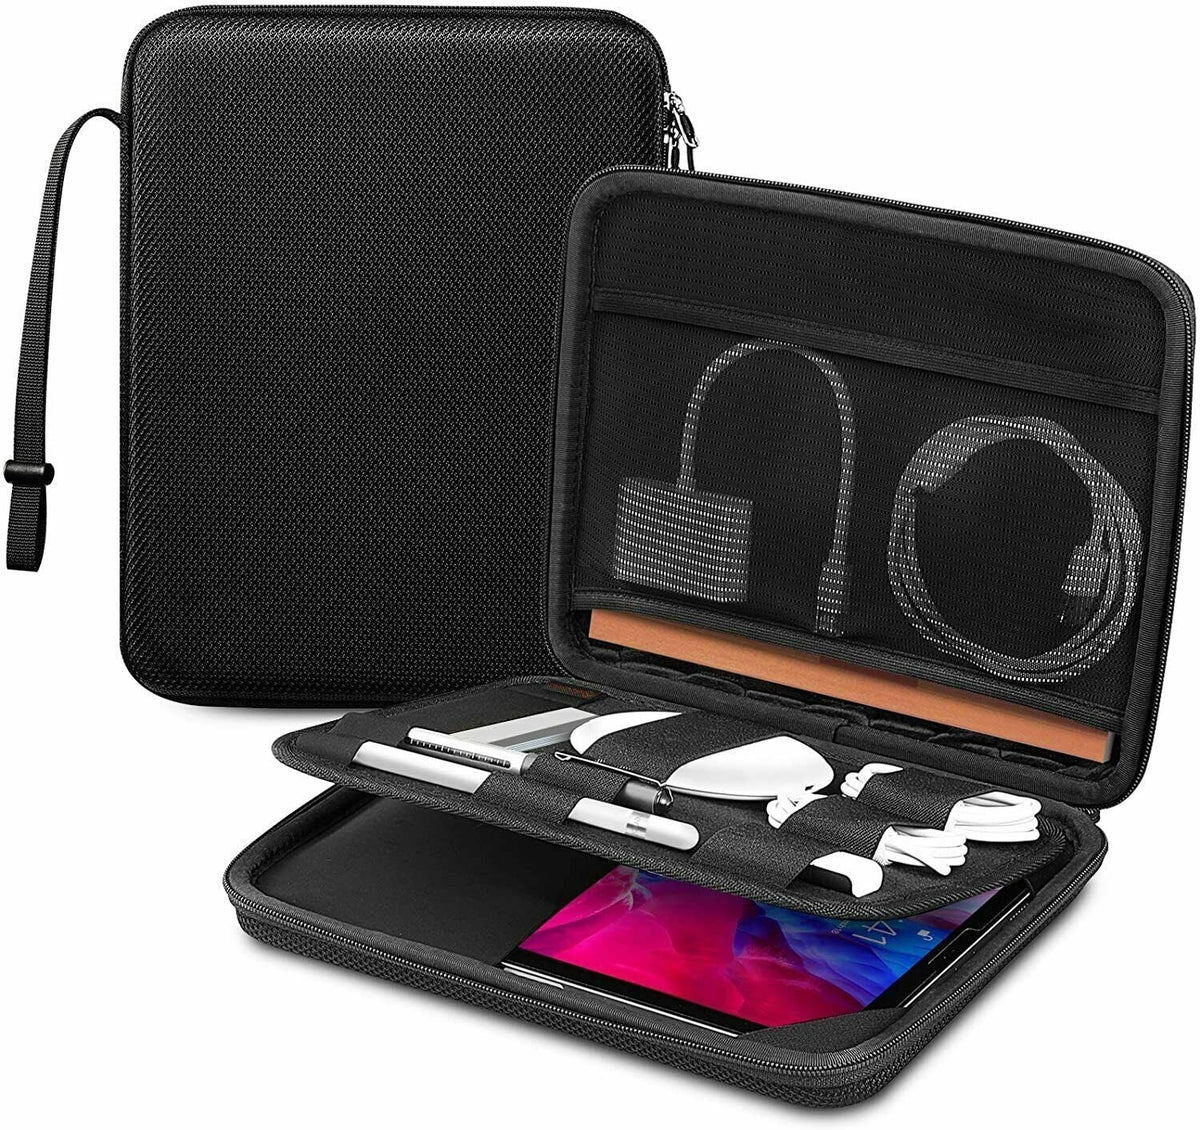 حقيبة مميزة للحفاظ على الأجهزة والهواتف والسماعات والأدوات الشخصية